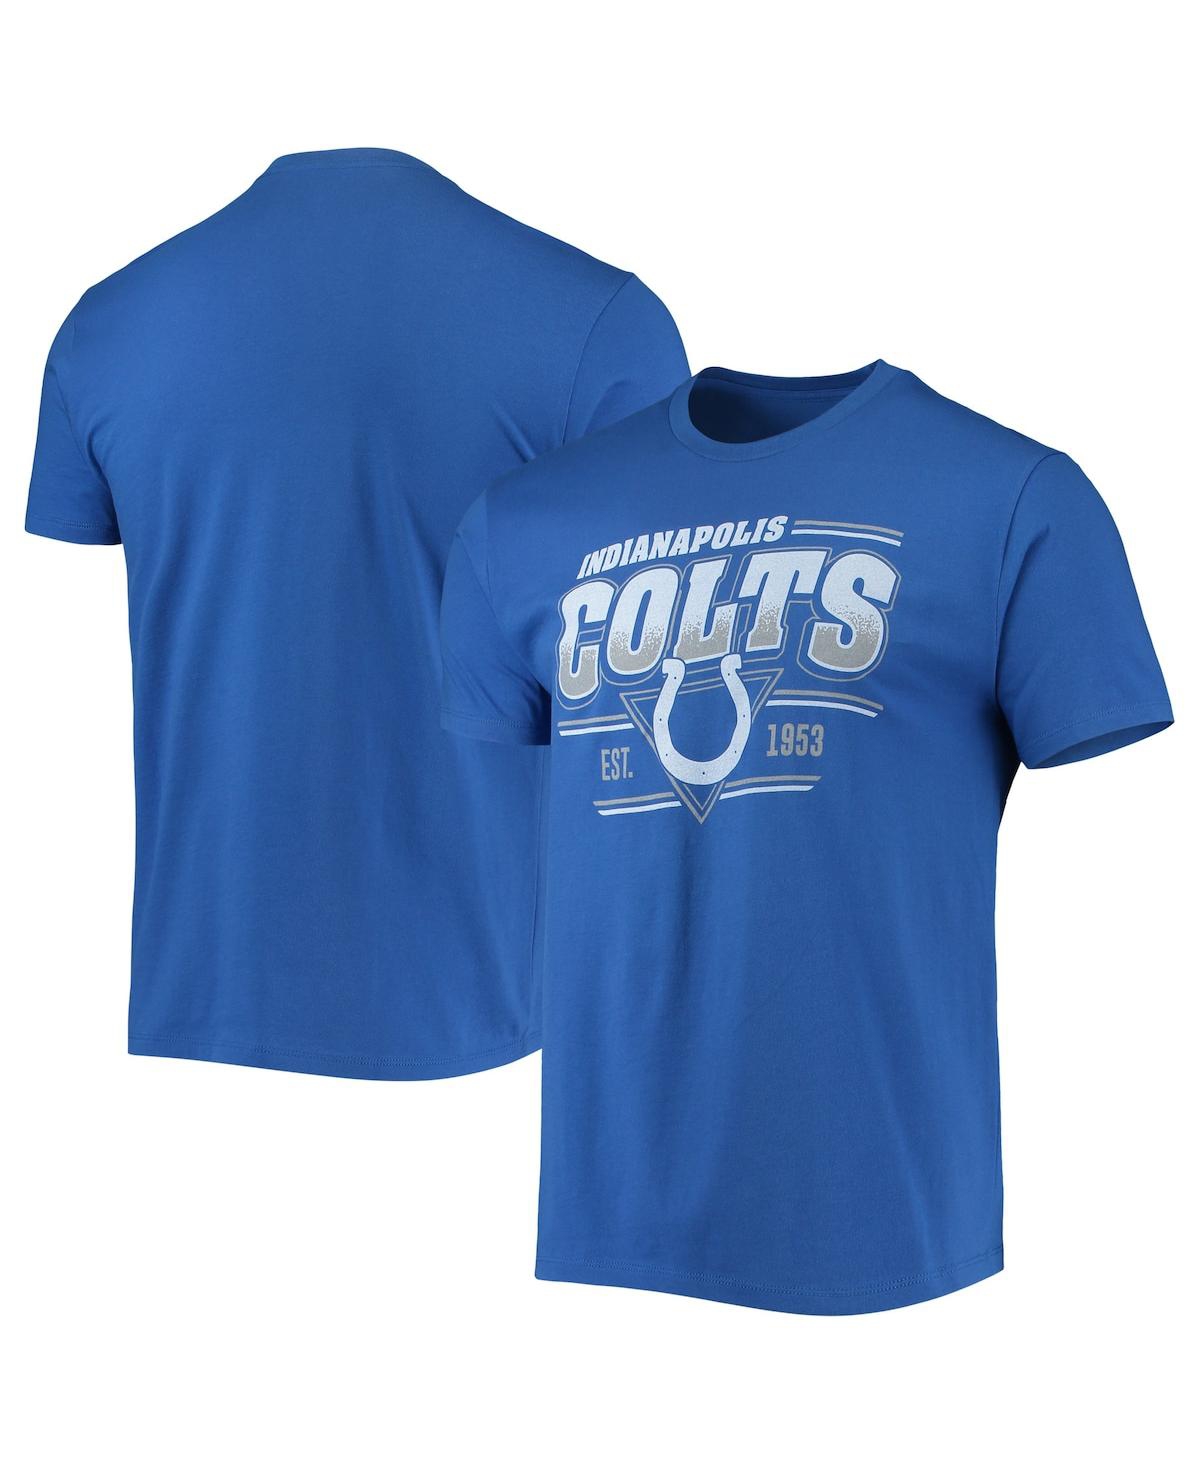 Men's Royal Indianapolis Colts Throwback T-shirt - Royal